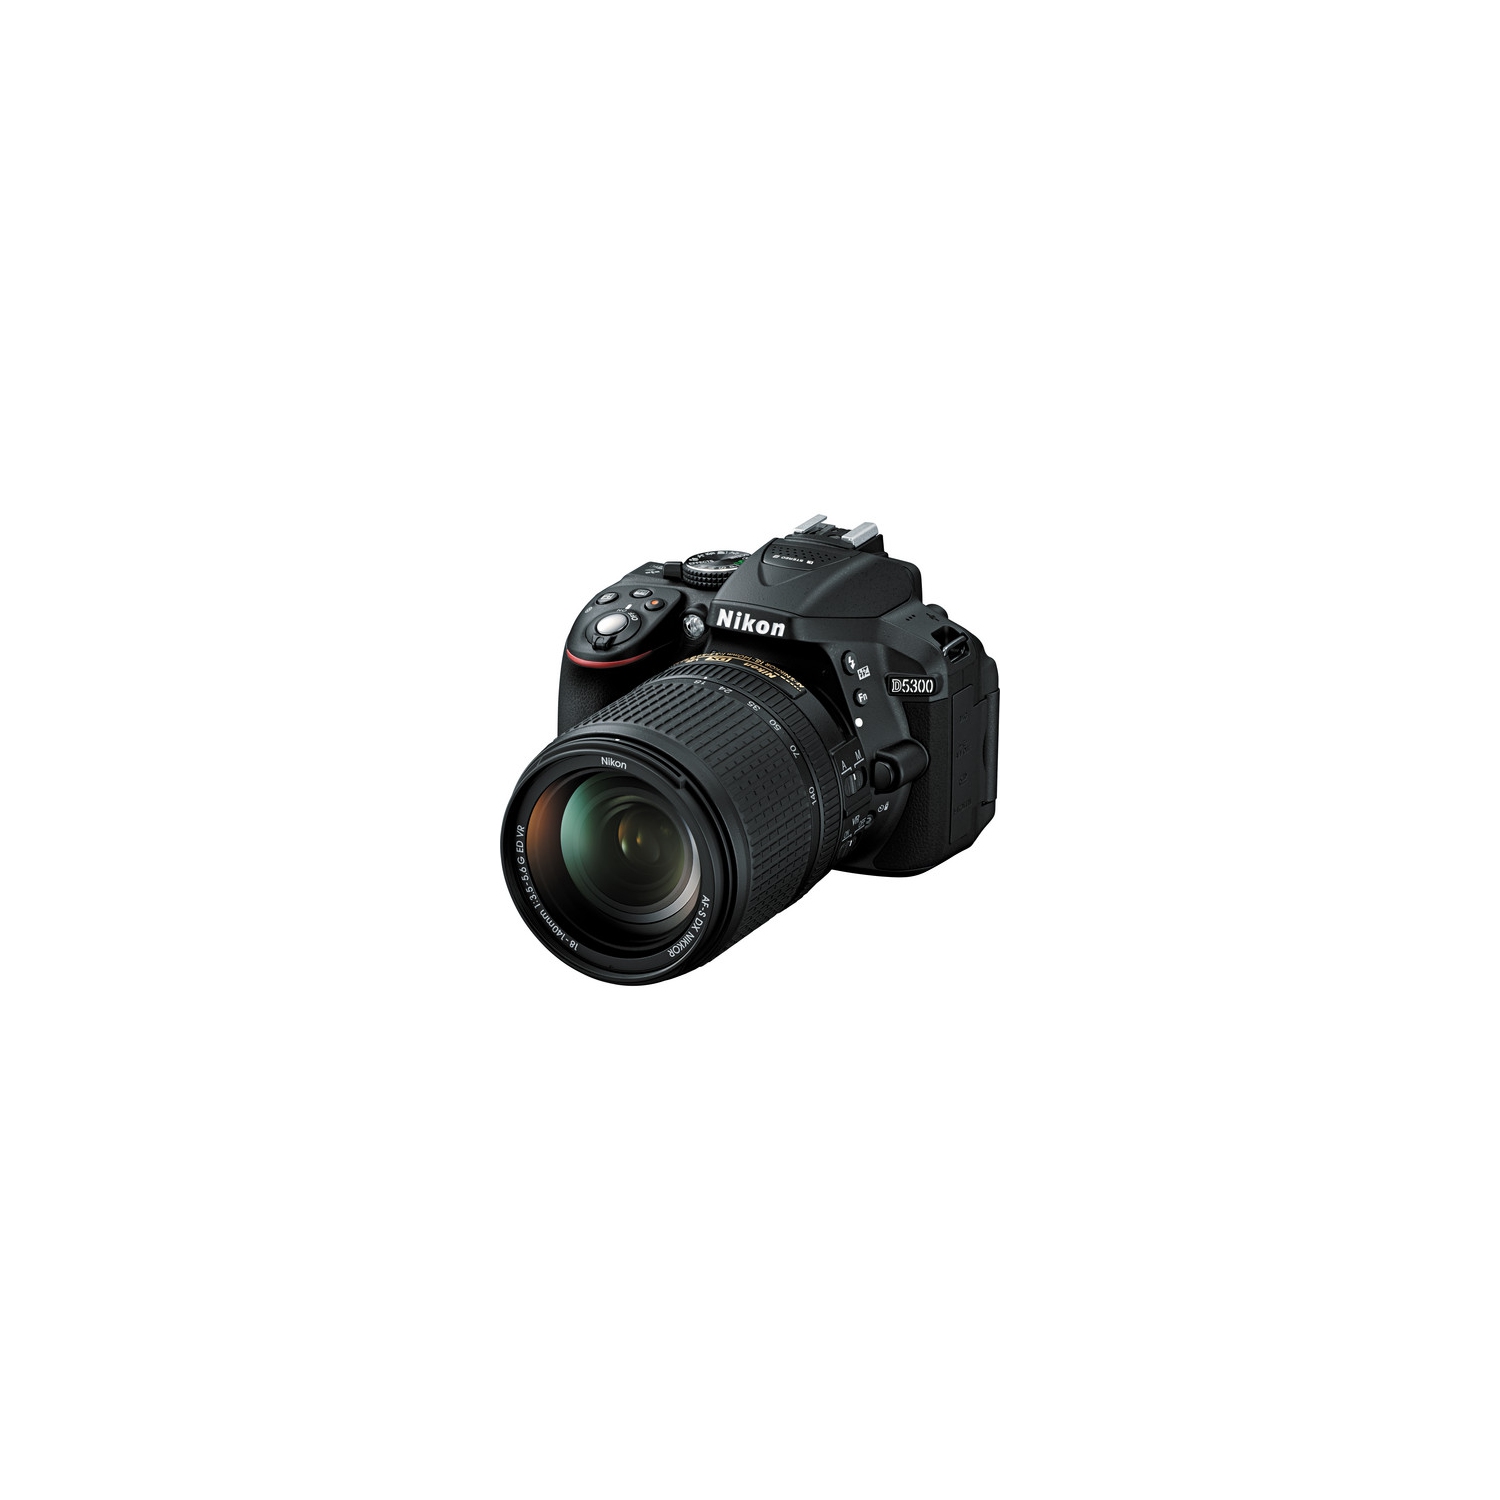 Nikon D5300 DSLR Camera with 18-140mm VR Lens (Black) - US Version w/Seller Warranty